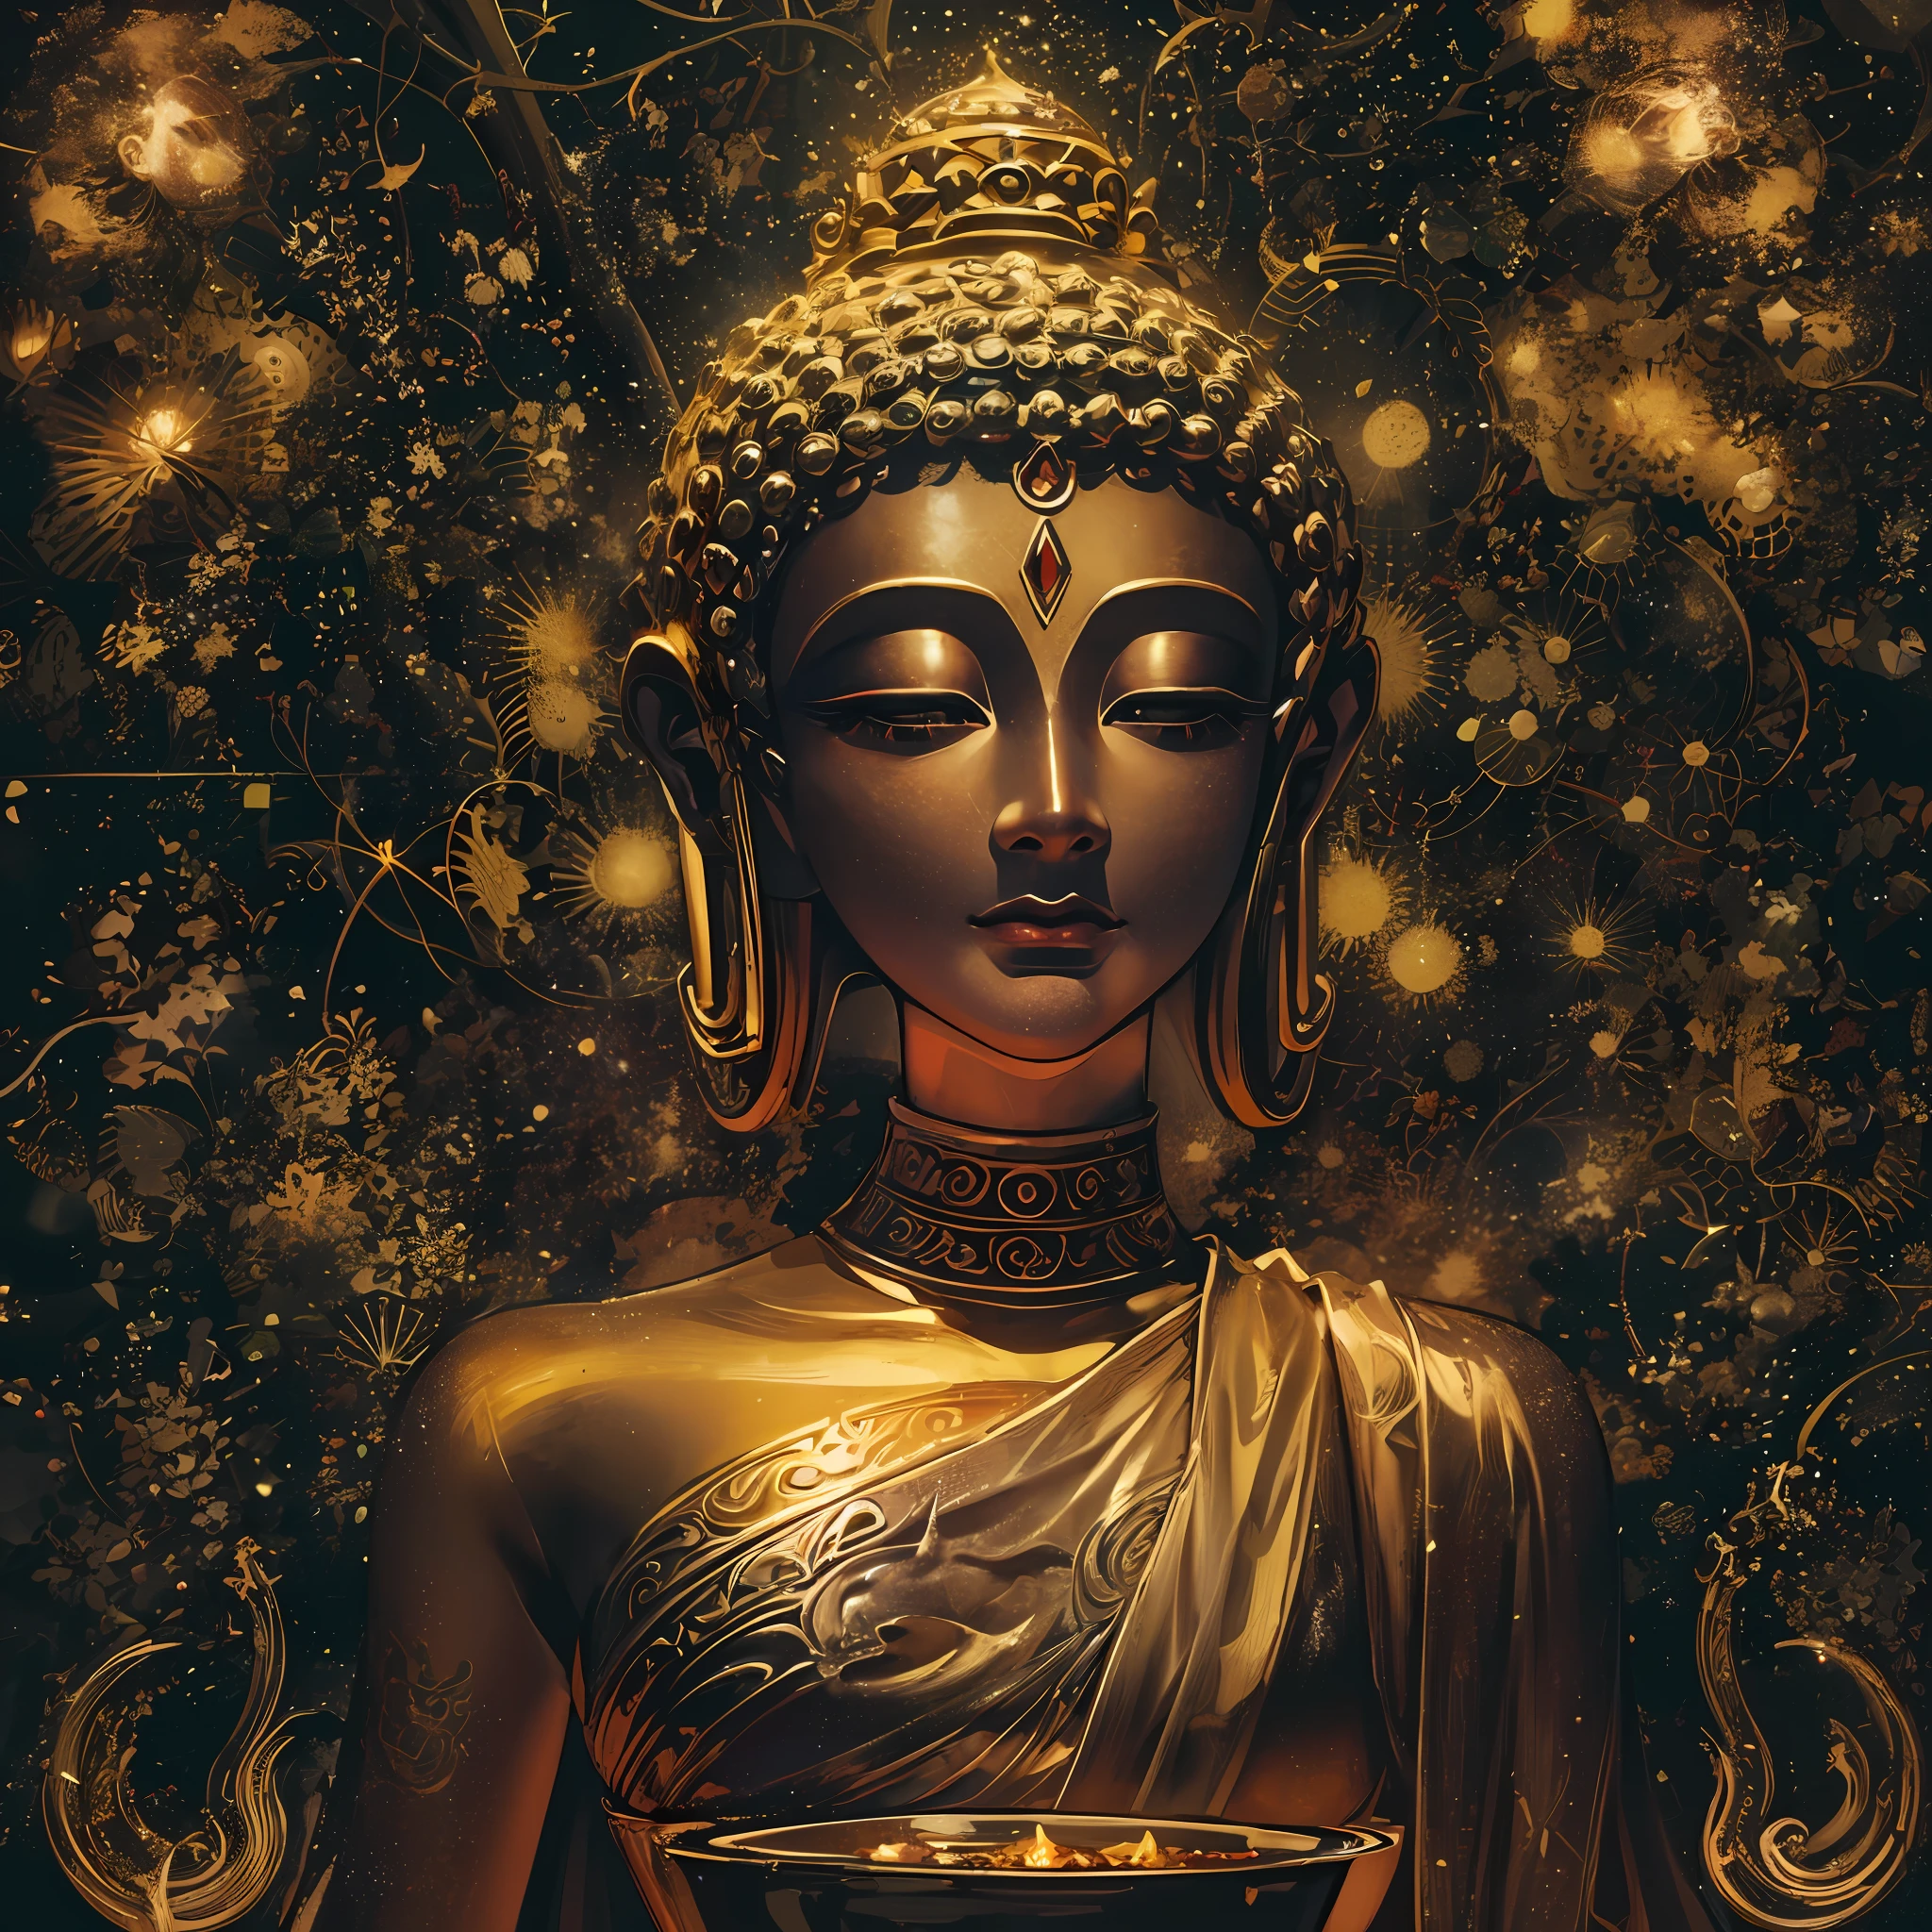 Una estatua dorada de Buda femenina, retrato frontal, con un incensario al frente, En un contexto de cosmos oscuro, foto tomada con la cámara sony a7r, Tomada con Sigma 20mm F1.4, hermosa imagen, surrealism, iluminación cinematográfica, luz de dios, iluminación retroiluminada, piel texturizada, súper detalle,